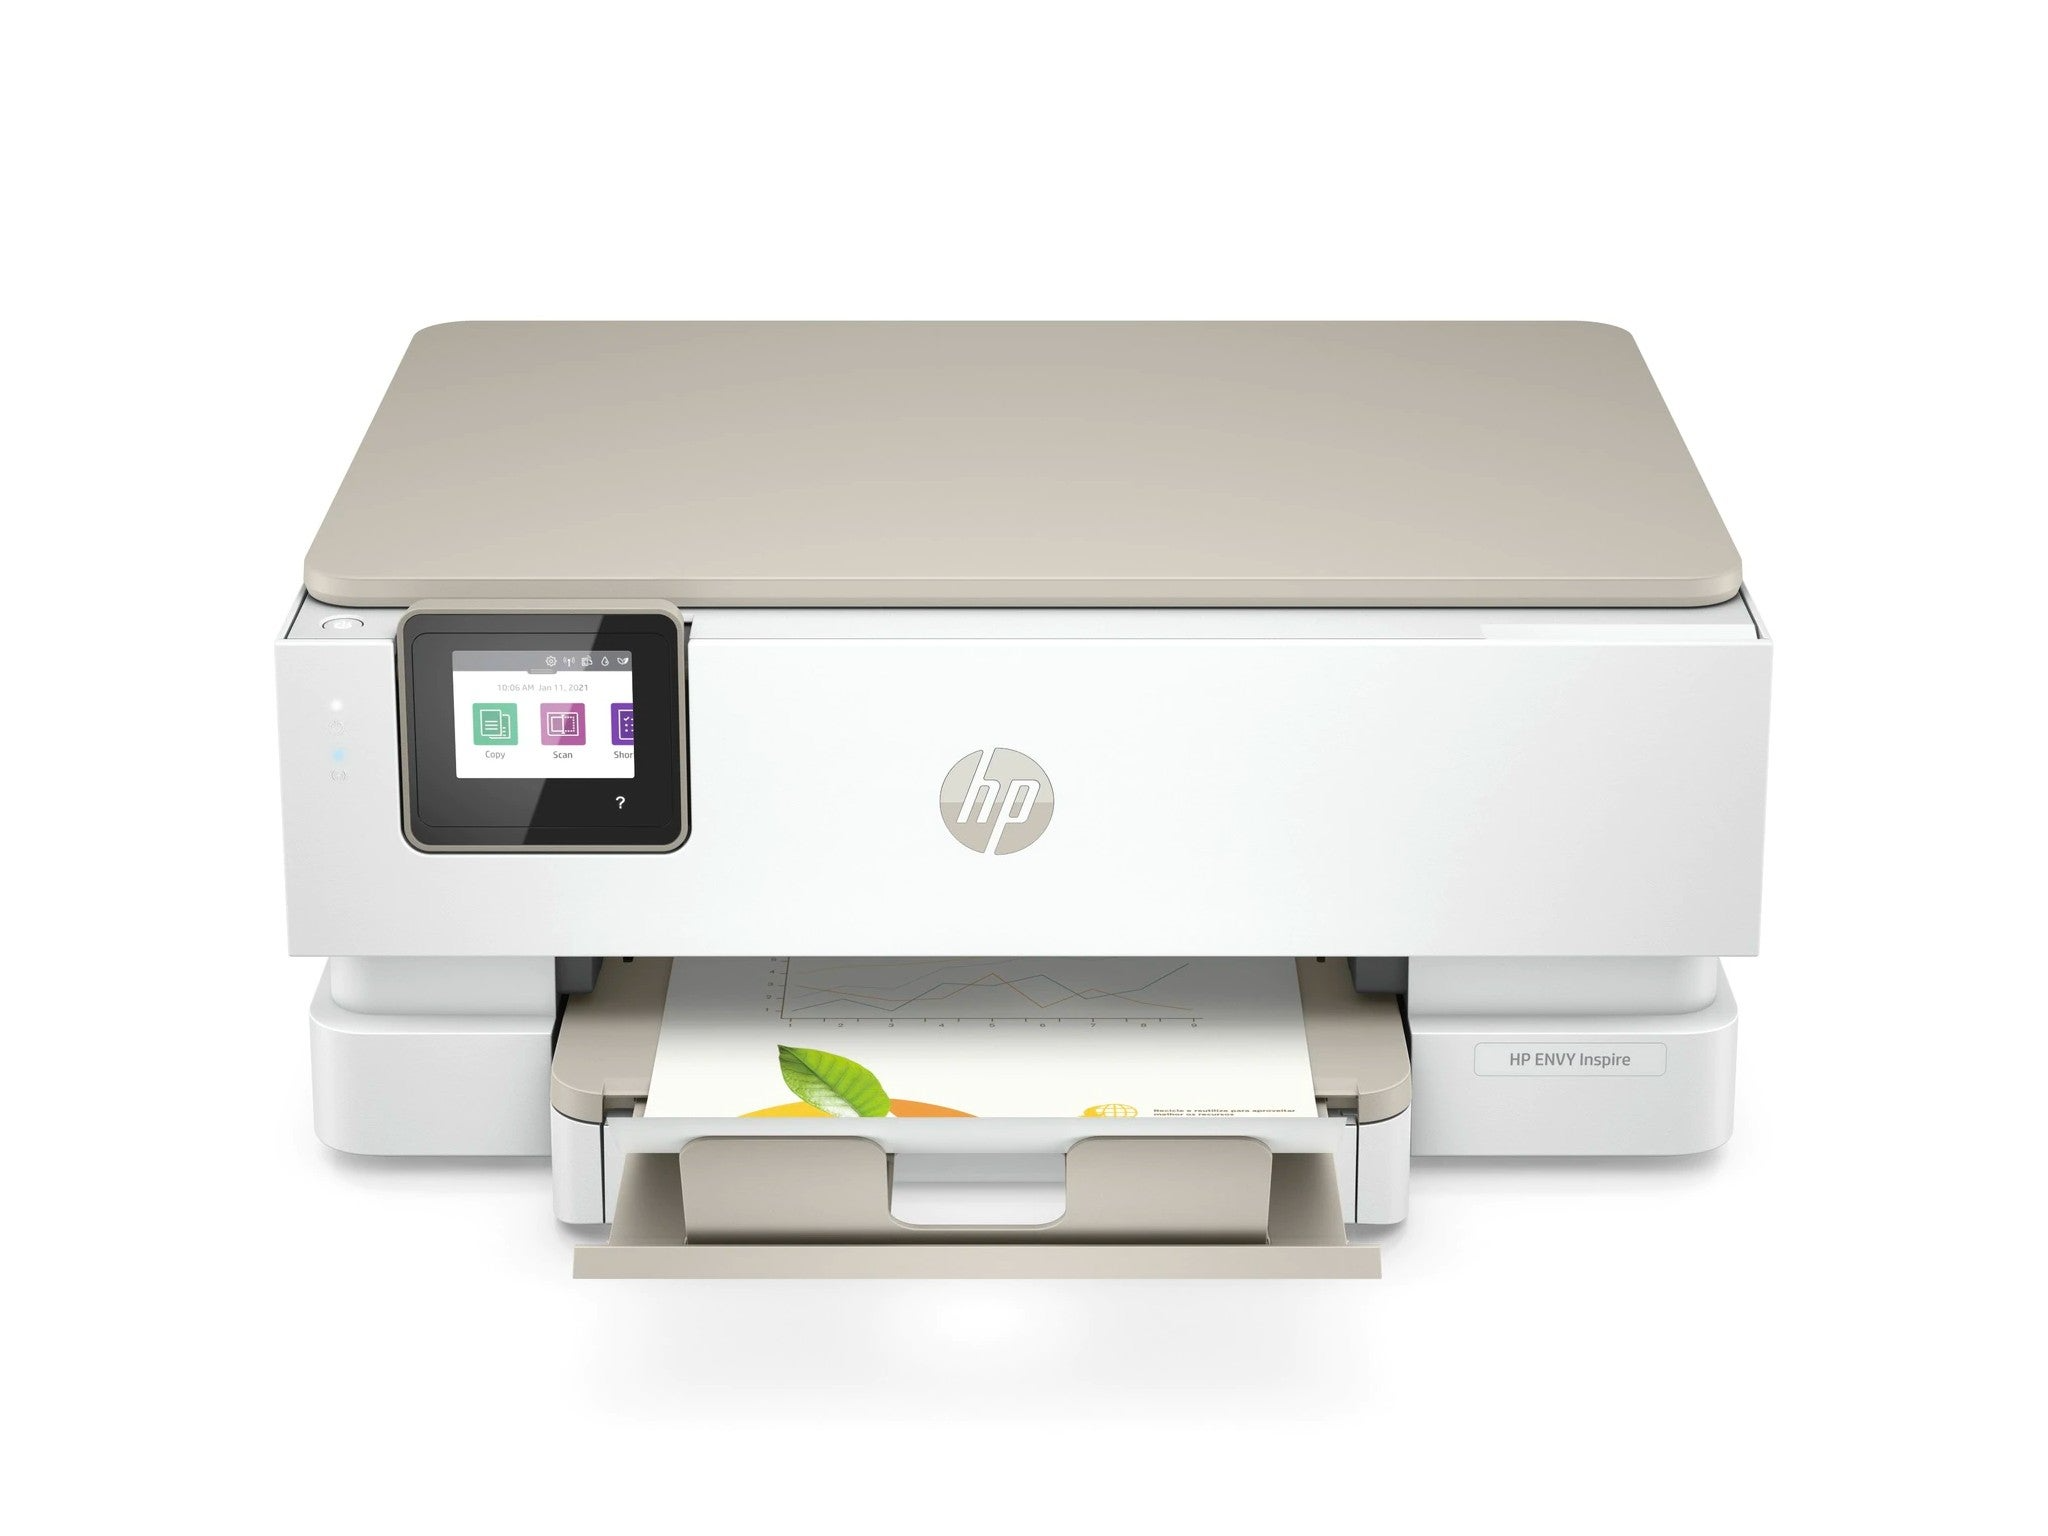 HP envy inspire 7220e home printer